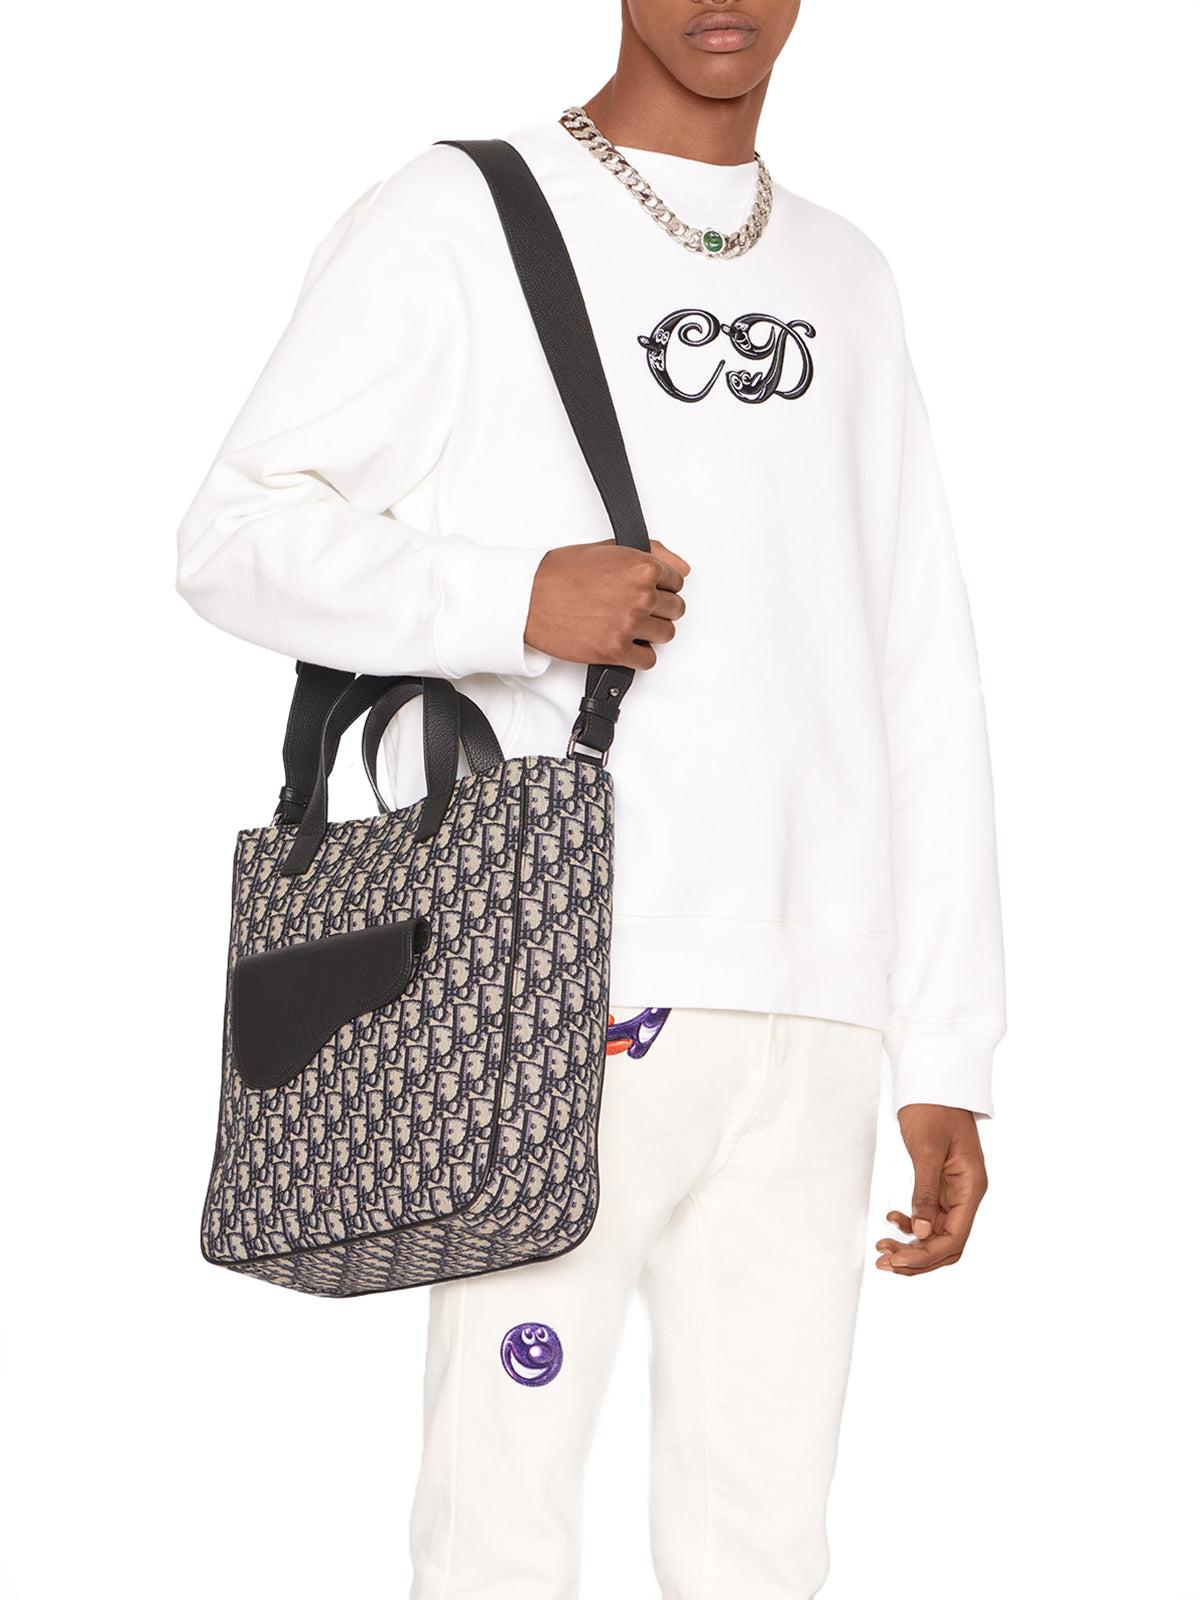 Dior Saddle Tote Bag With Shoulder Strap for Men